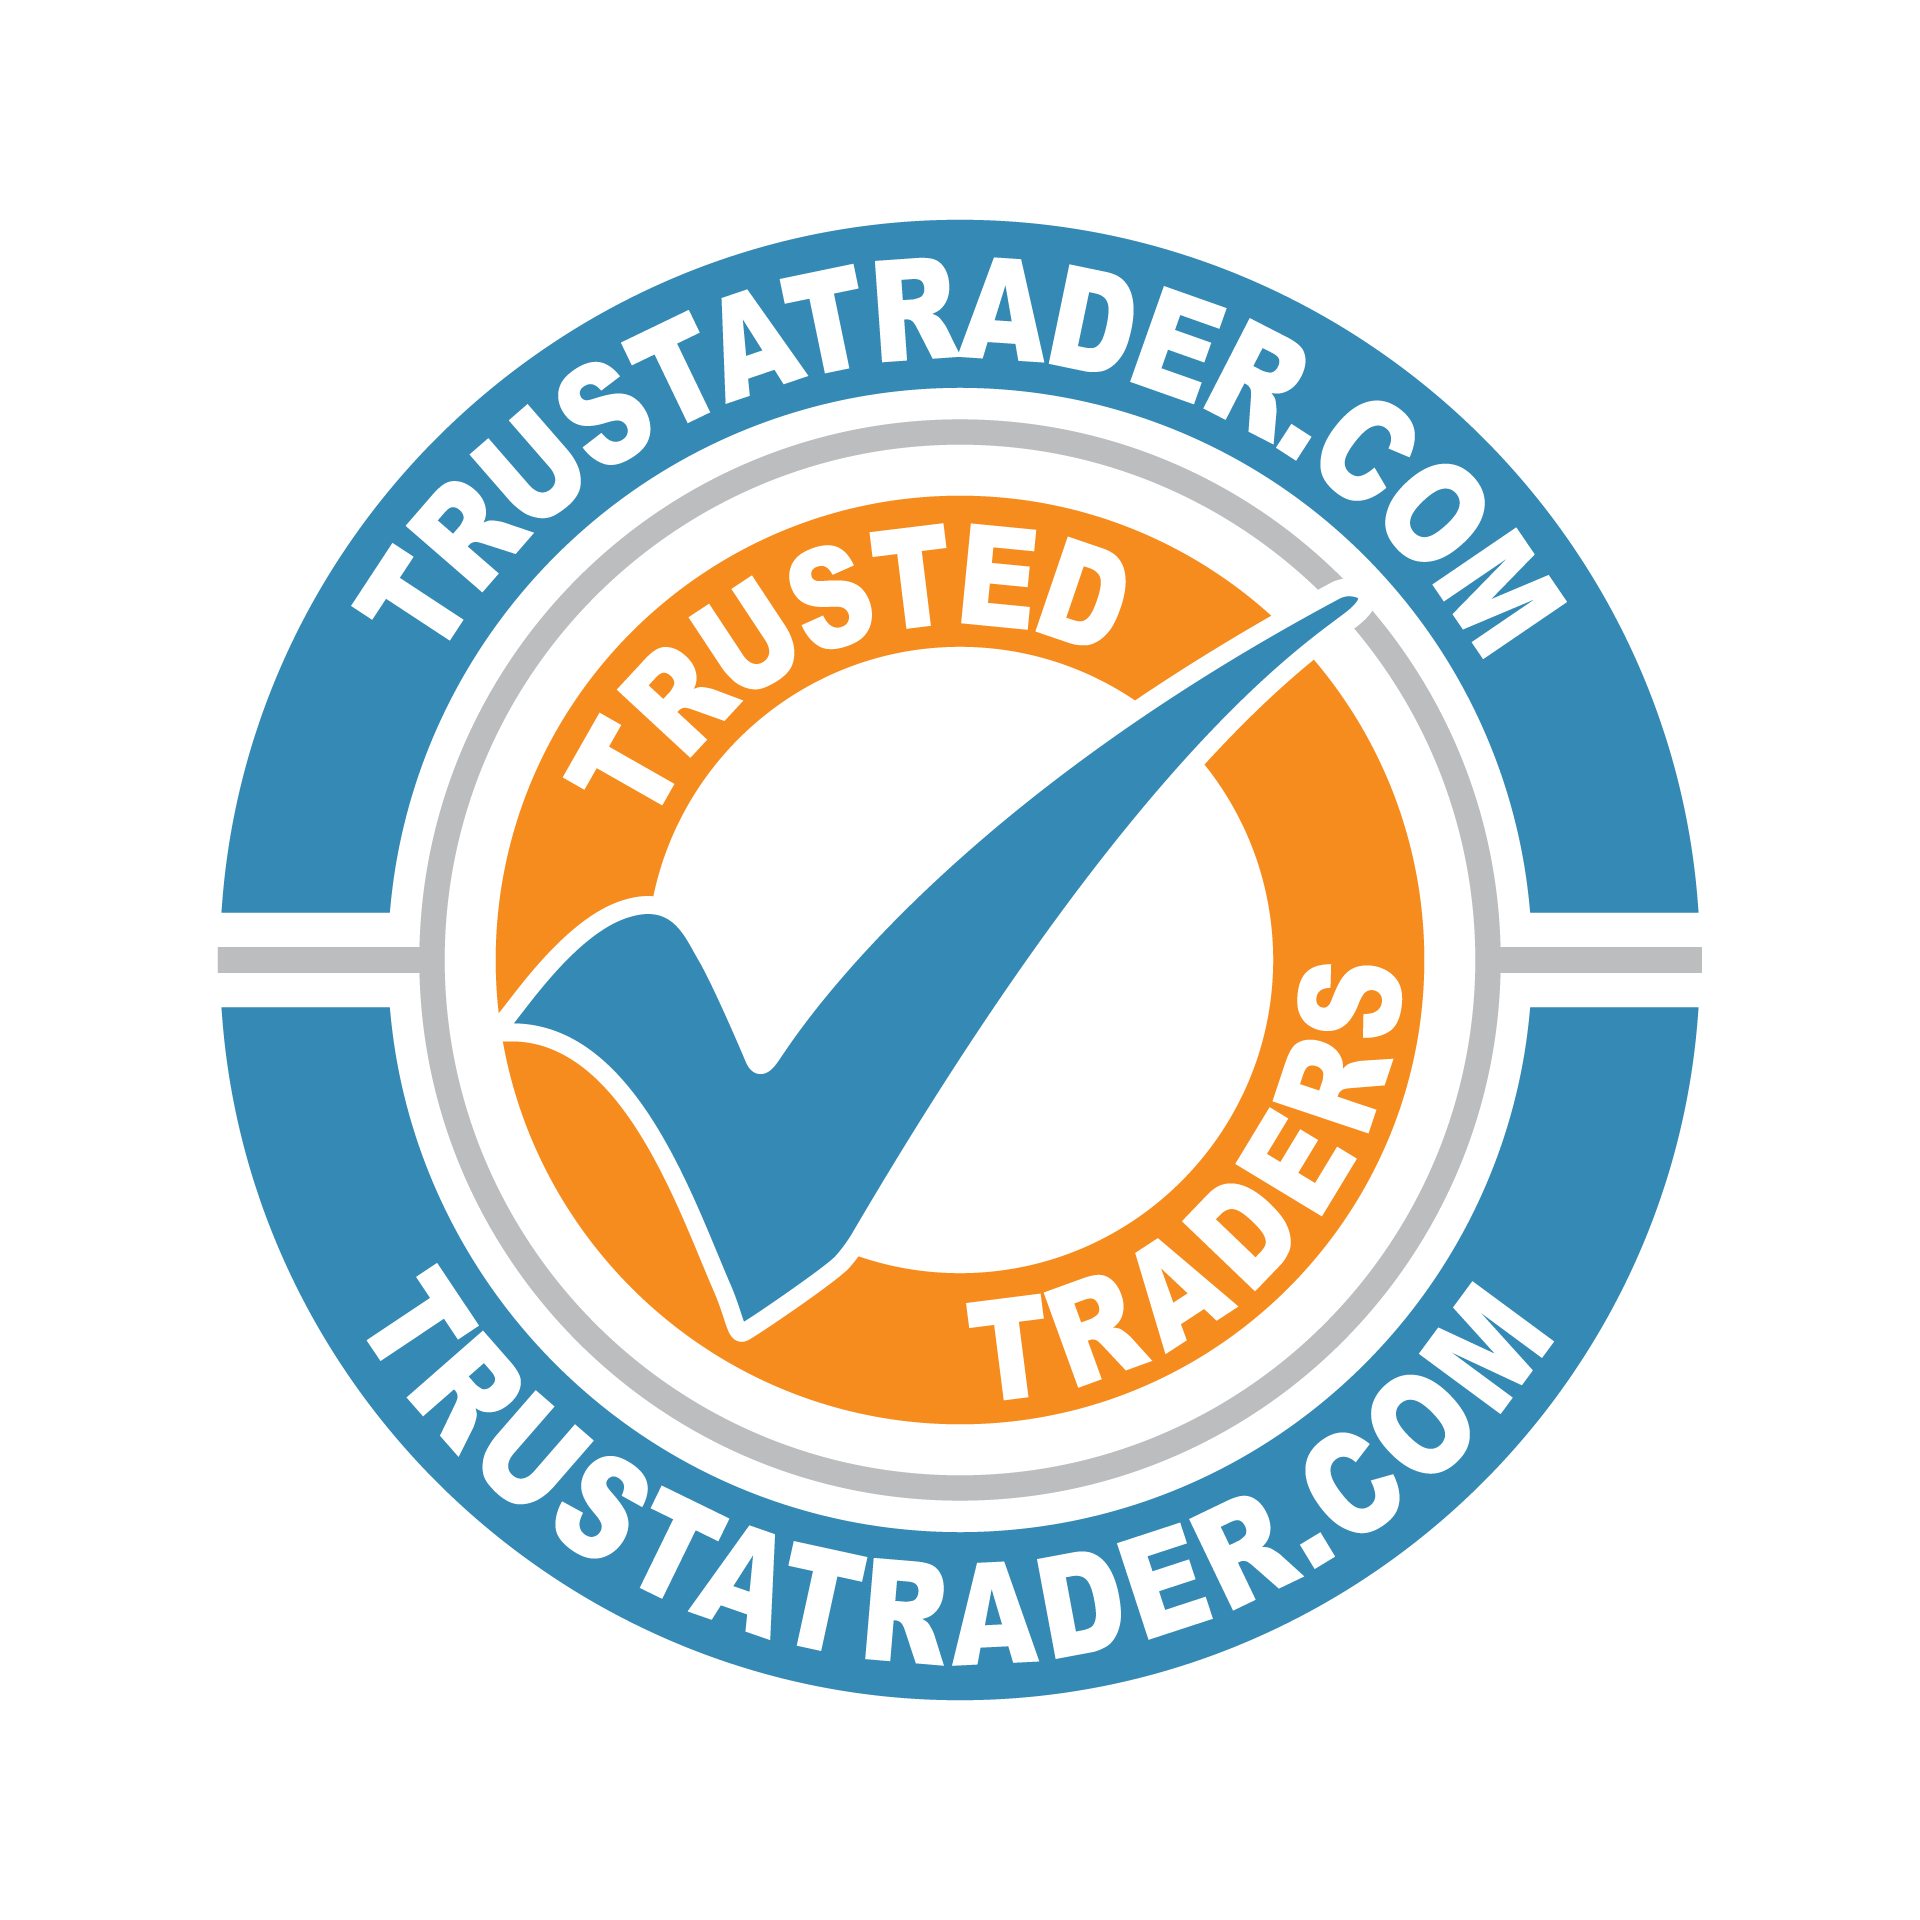 Trustatrader.png